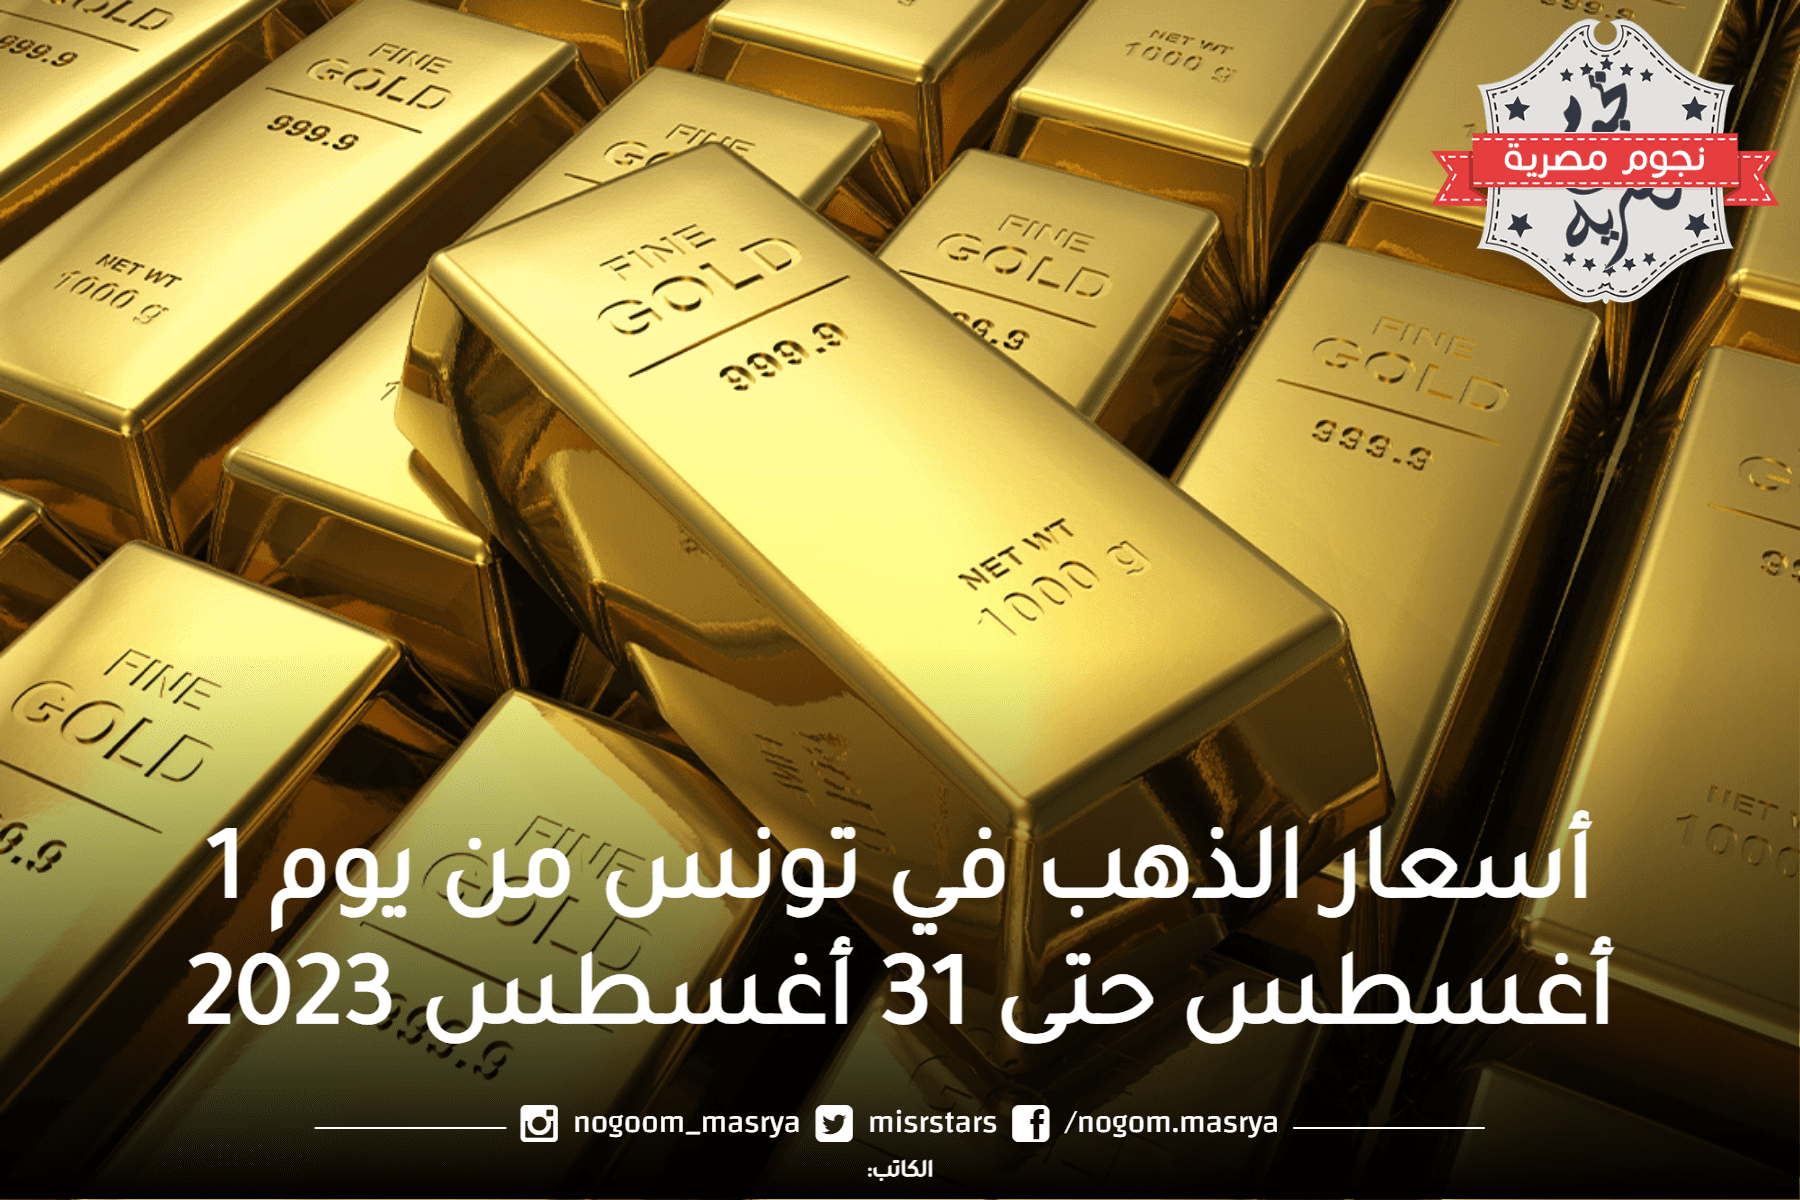 أسعار الذهب في دولة تونس الشقيقة شهر أغسطس 2023.